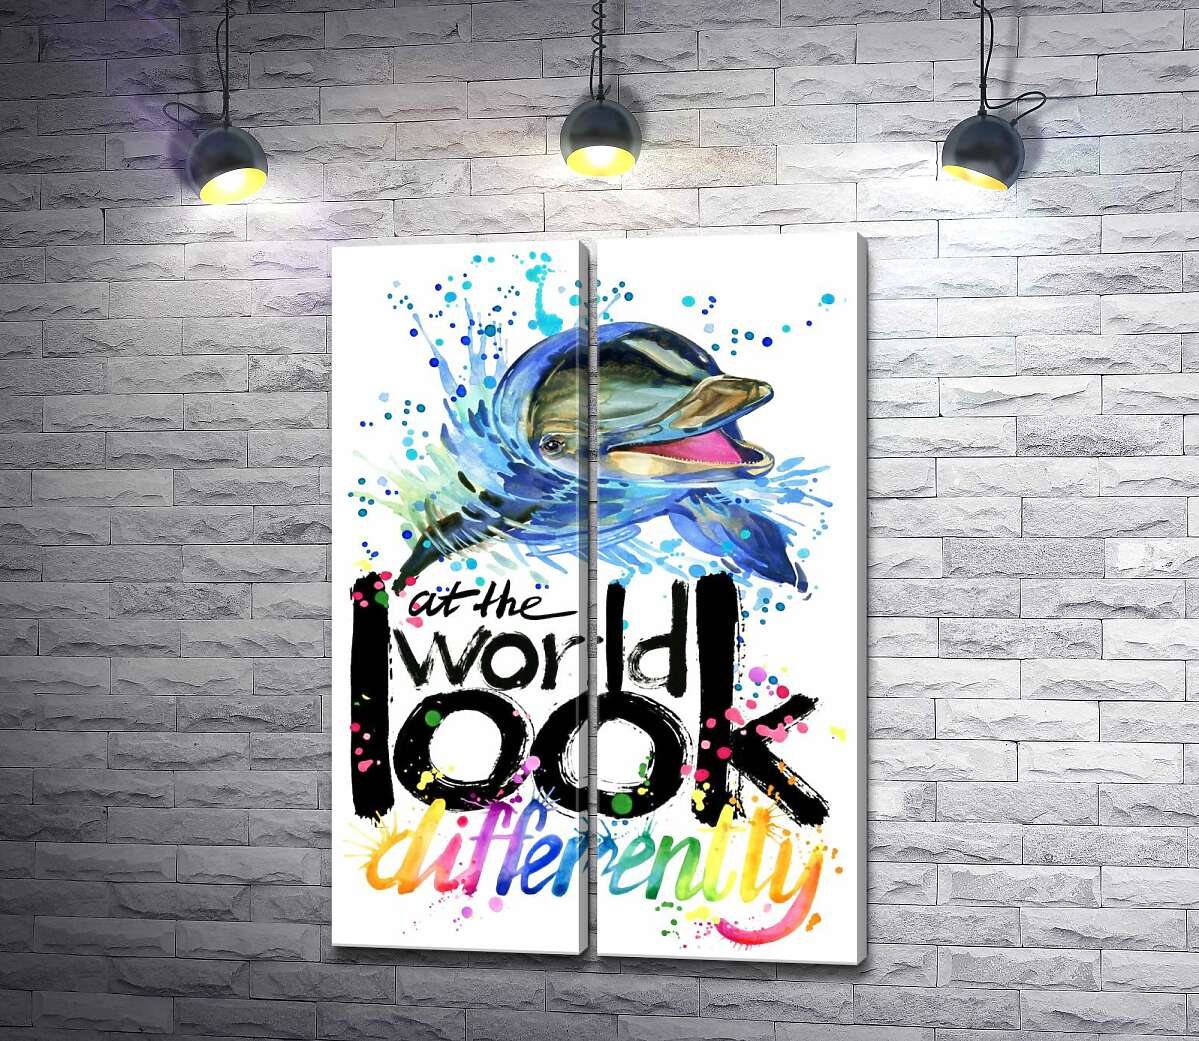 модульная картина Веселый дельфин с надписью "look at the world differently"